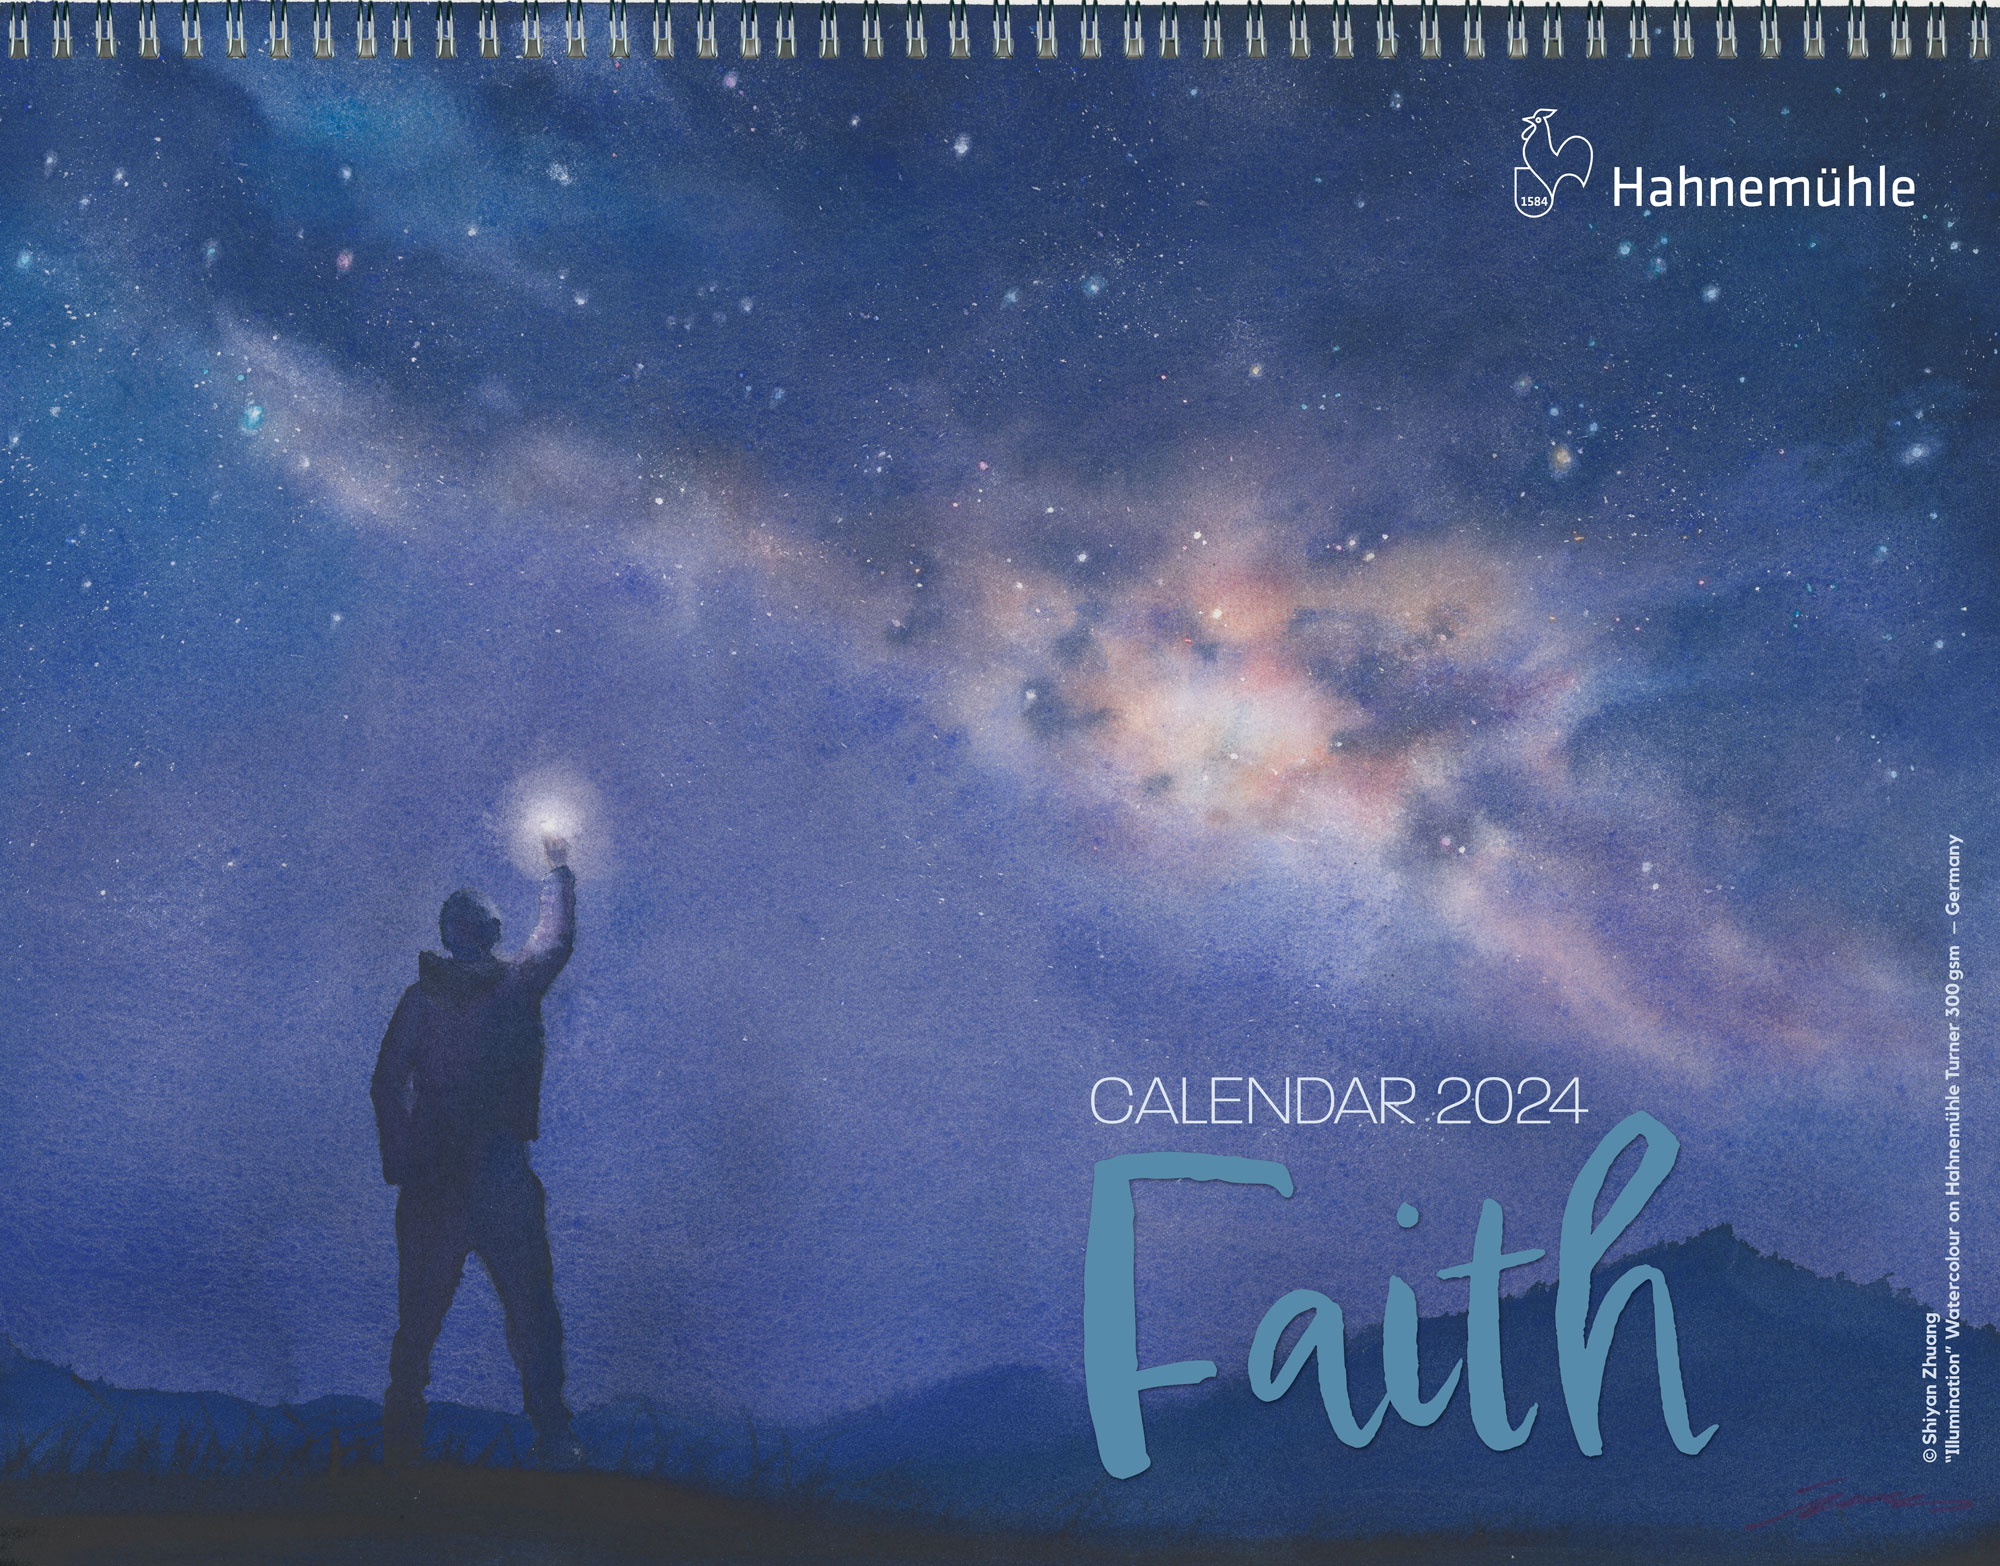 Hahnemühle Calendar 2024 "Faith"